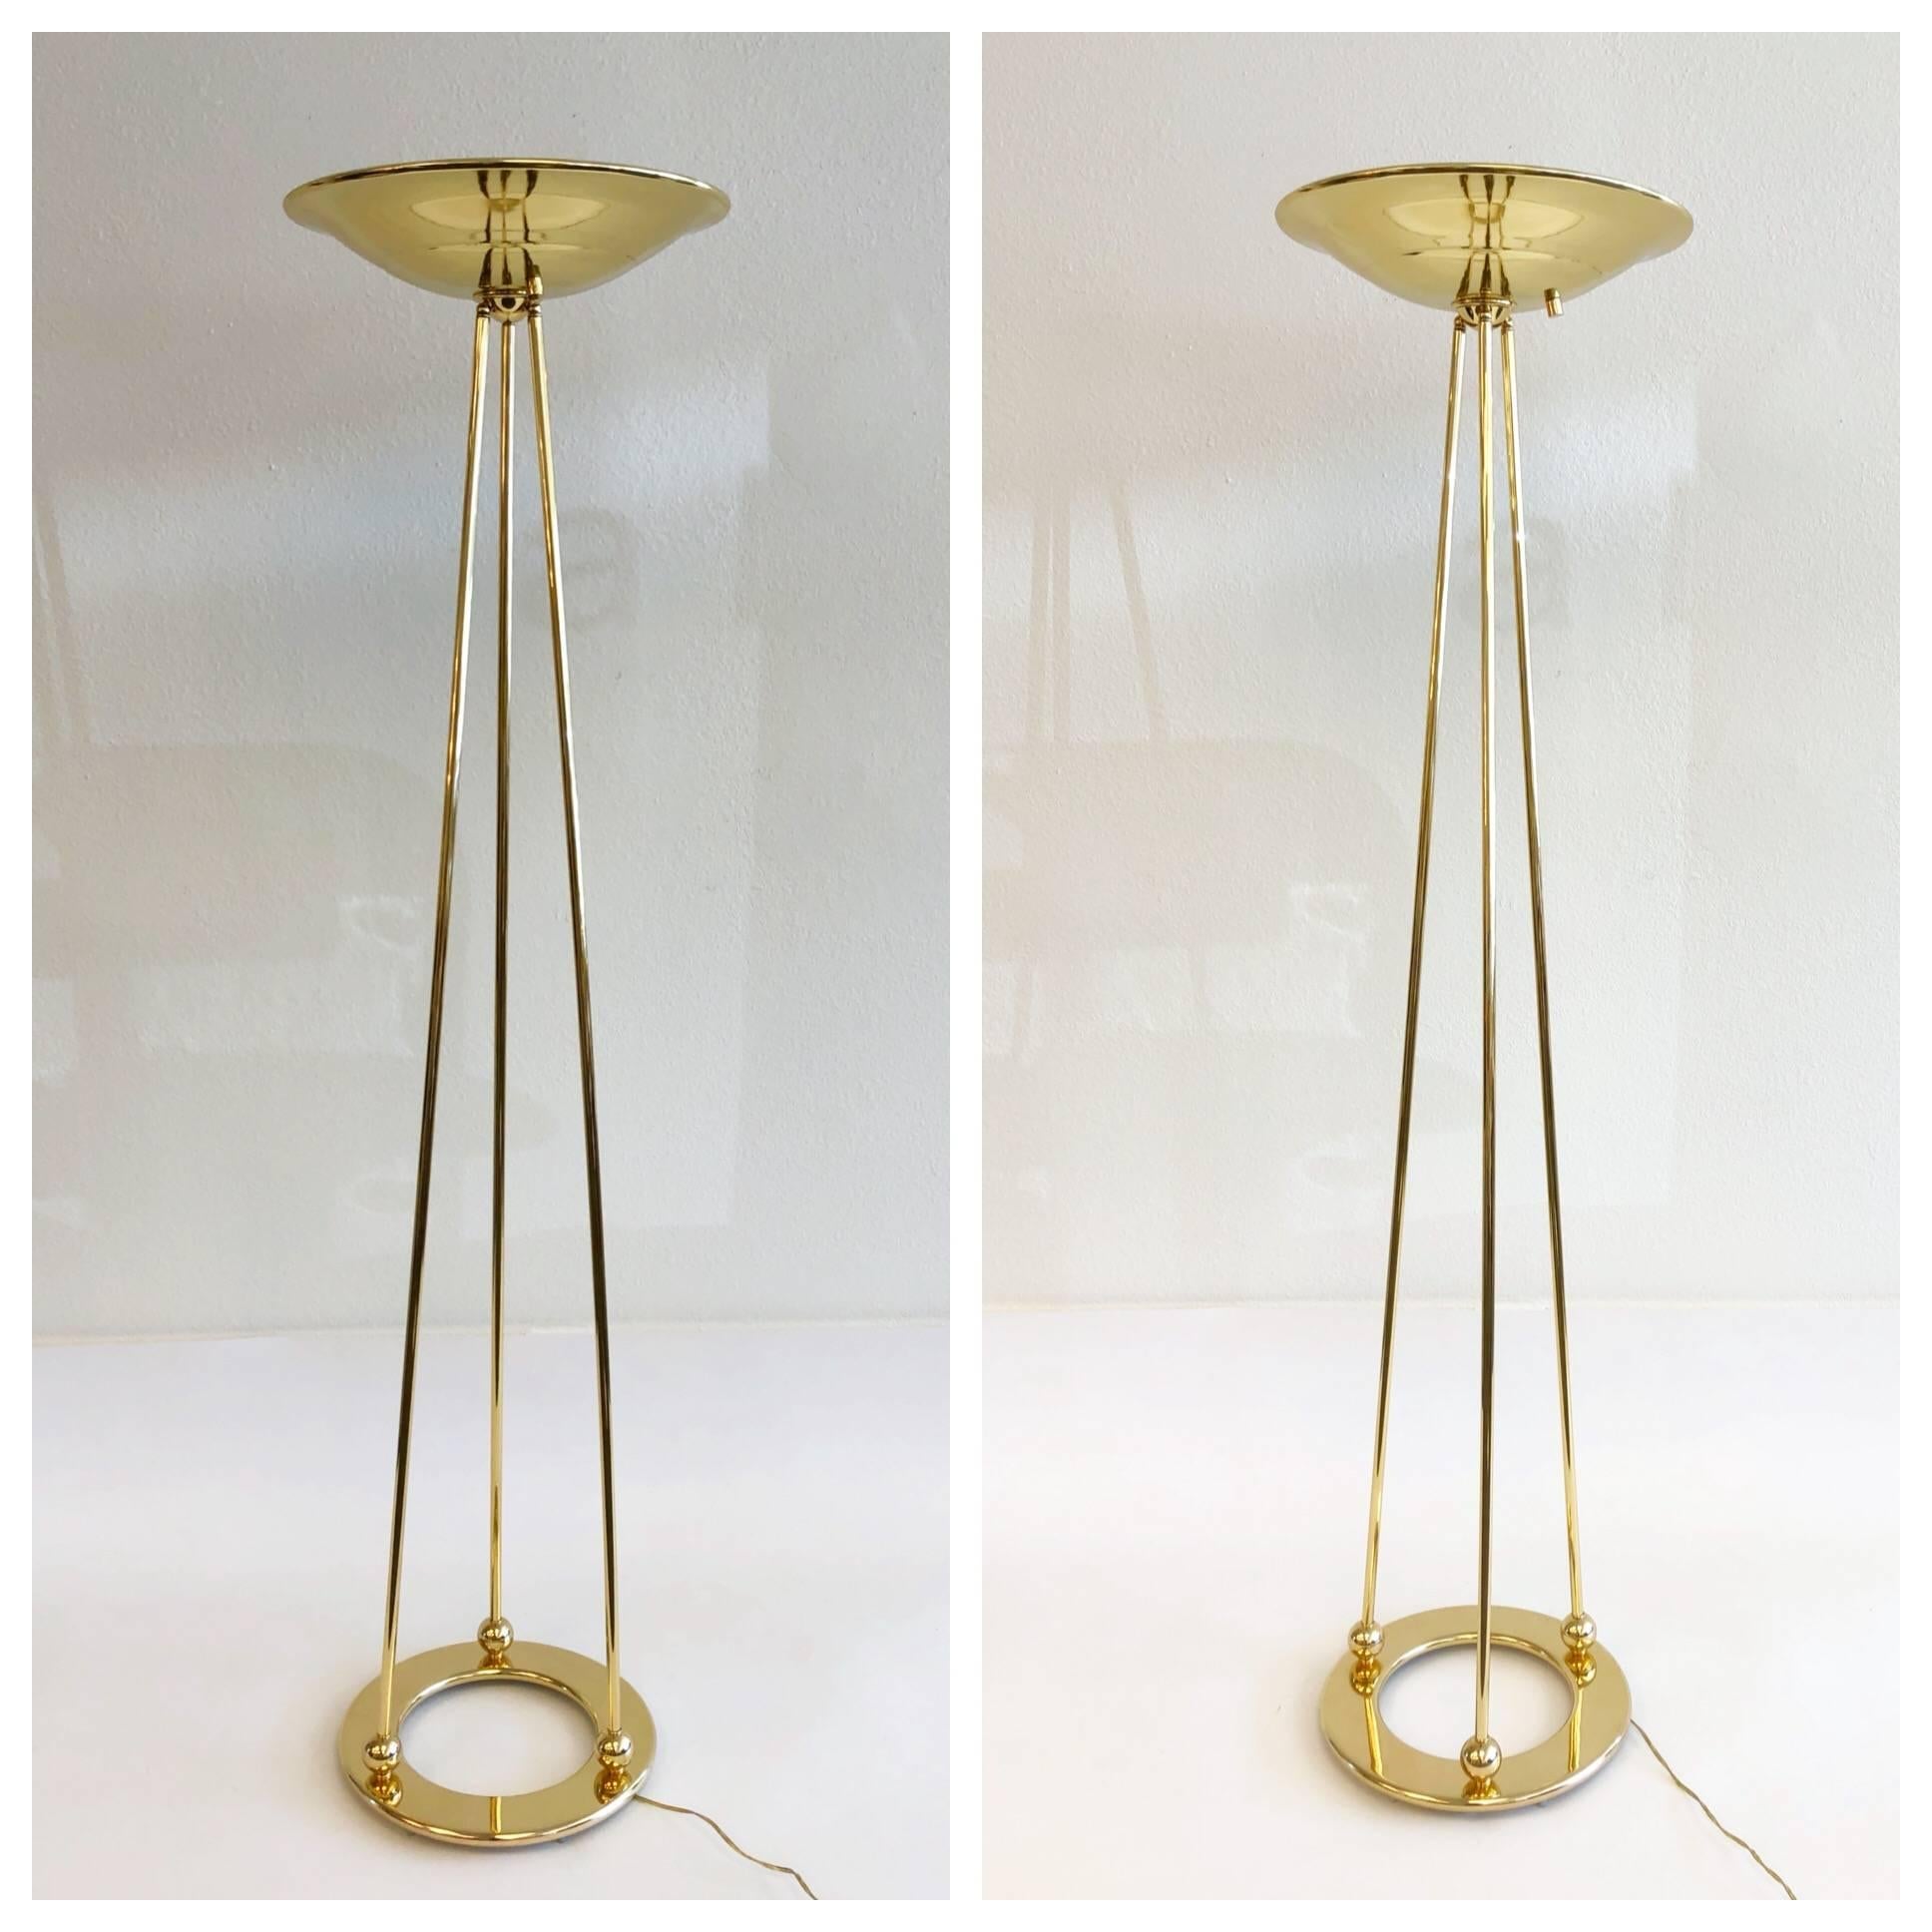 Magnifique paire de lampadaires torchères en laiton poli des années 1970 par Casella.
Le câblage des lampes a été refait. Les lampes sont dotées d'un variateur d'intensité sur l'abat-jour et fonctionnent avec une ampoule halogène de 300w. Usures